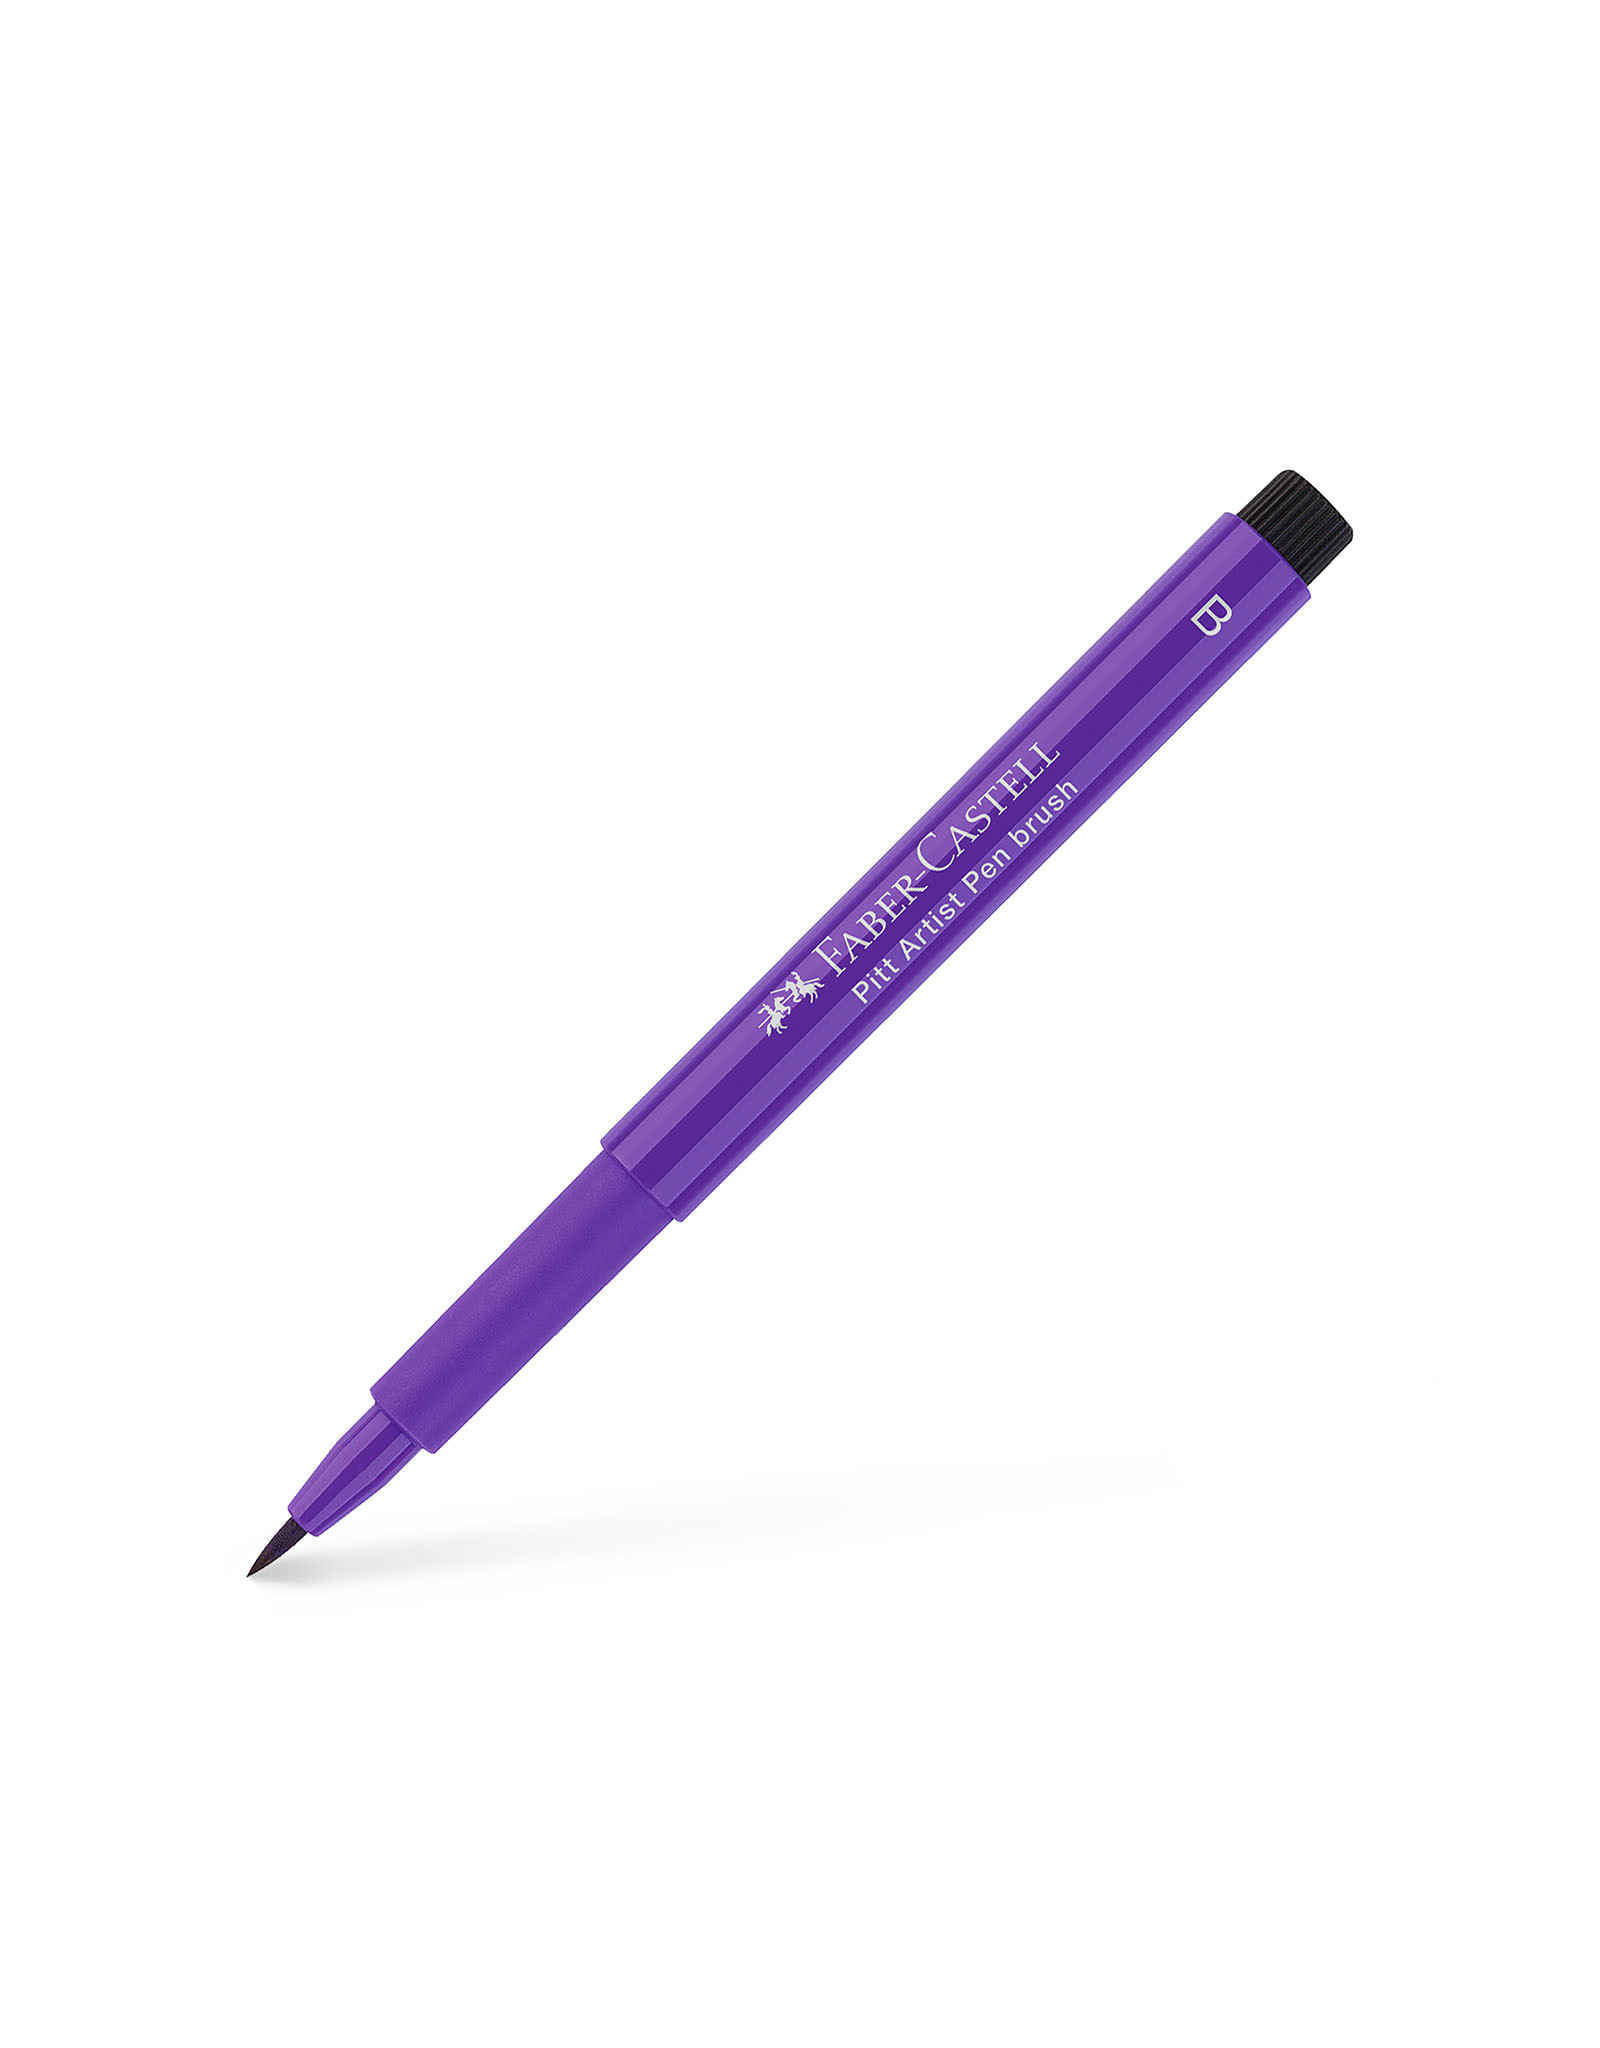 FABER-CASTELL Pitt Artist Pen, Brush, Purple Violet